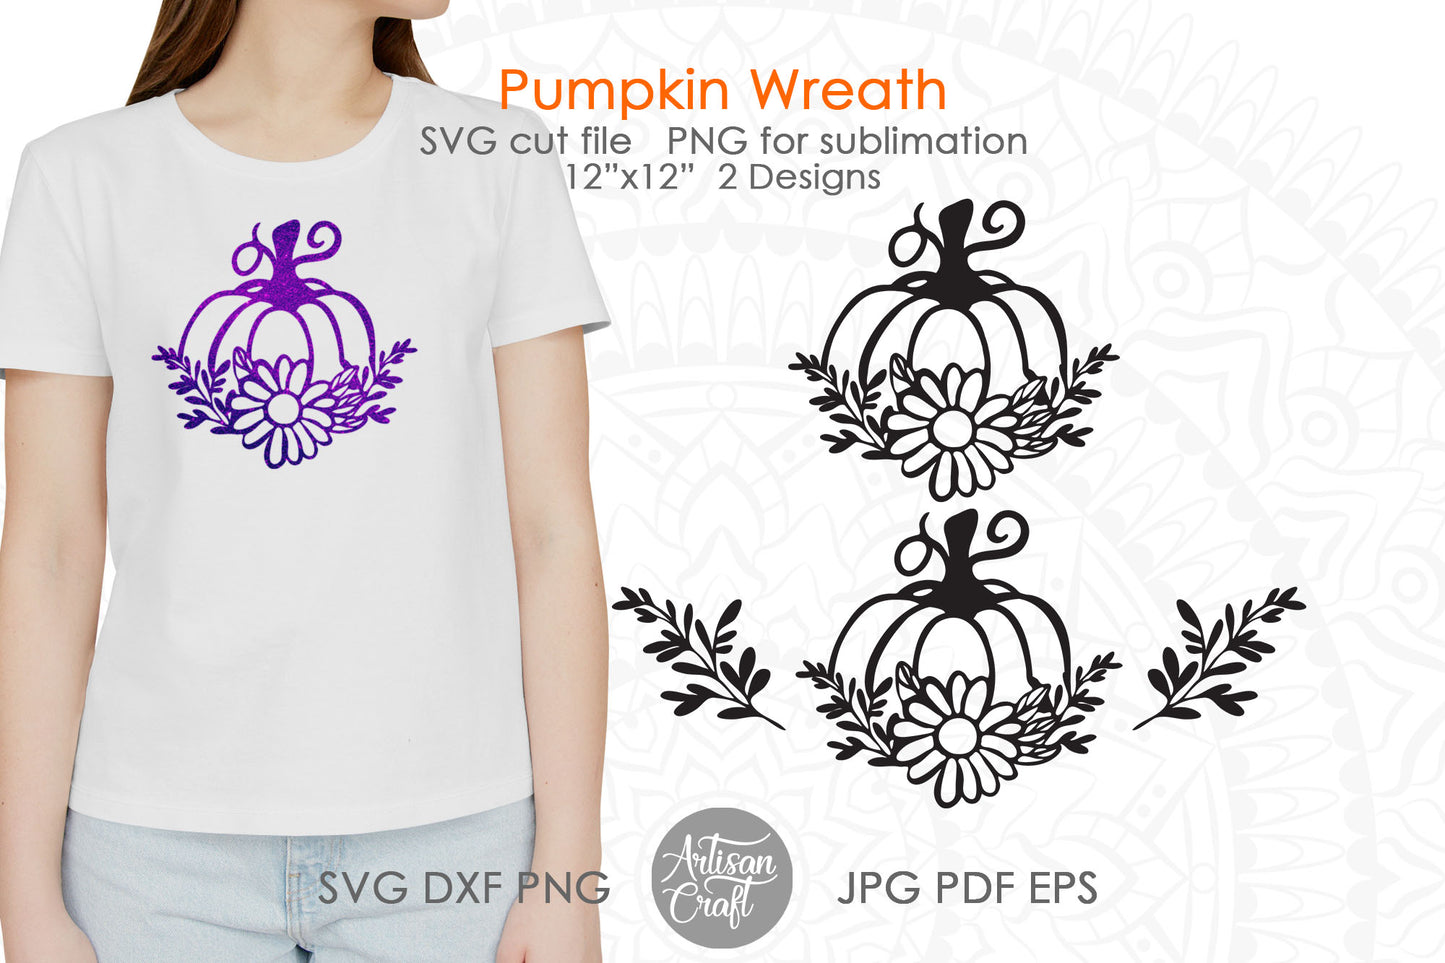 Pumpkin wreath SVG with sunflower